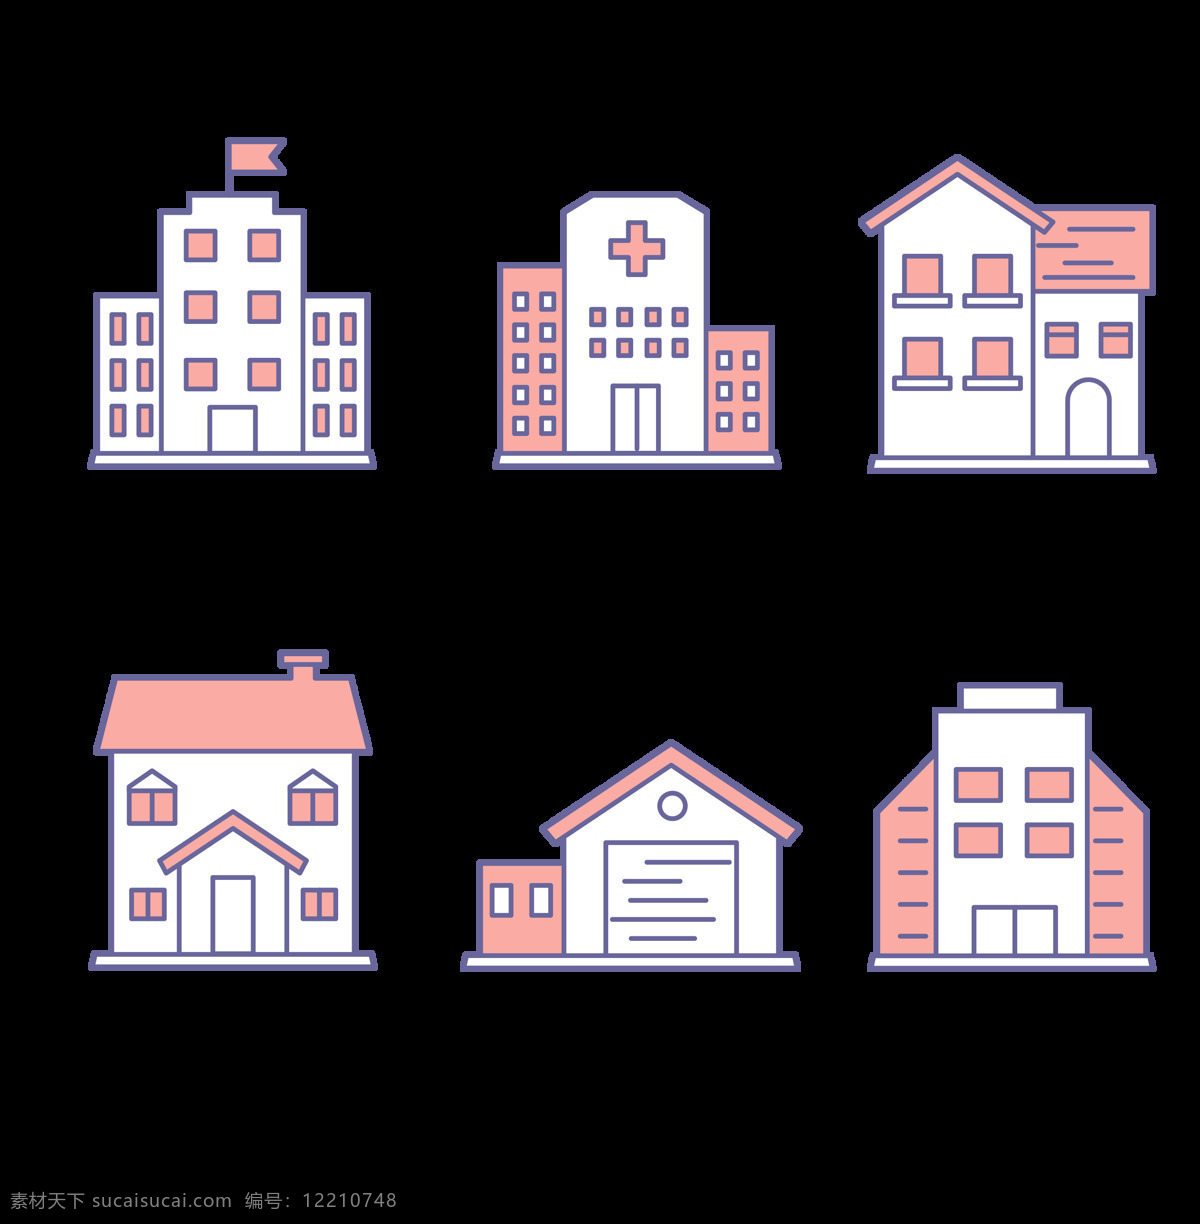 房子图形图片 房子 房子透明图标 建筑 医院 建筑图标 透明建筑物 卡通设计